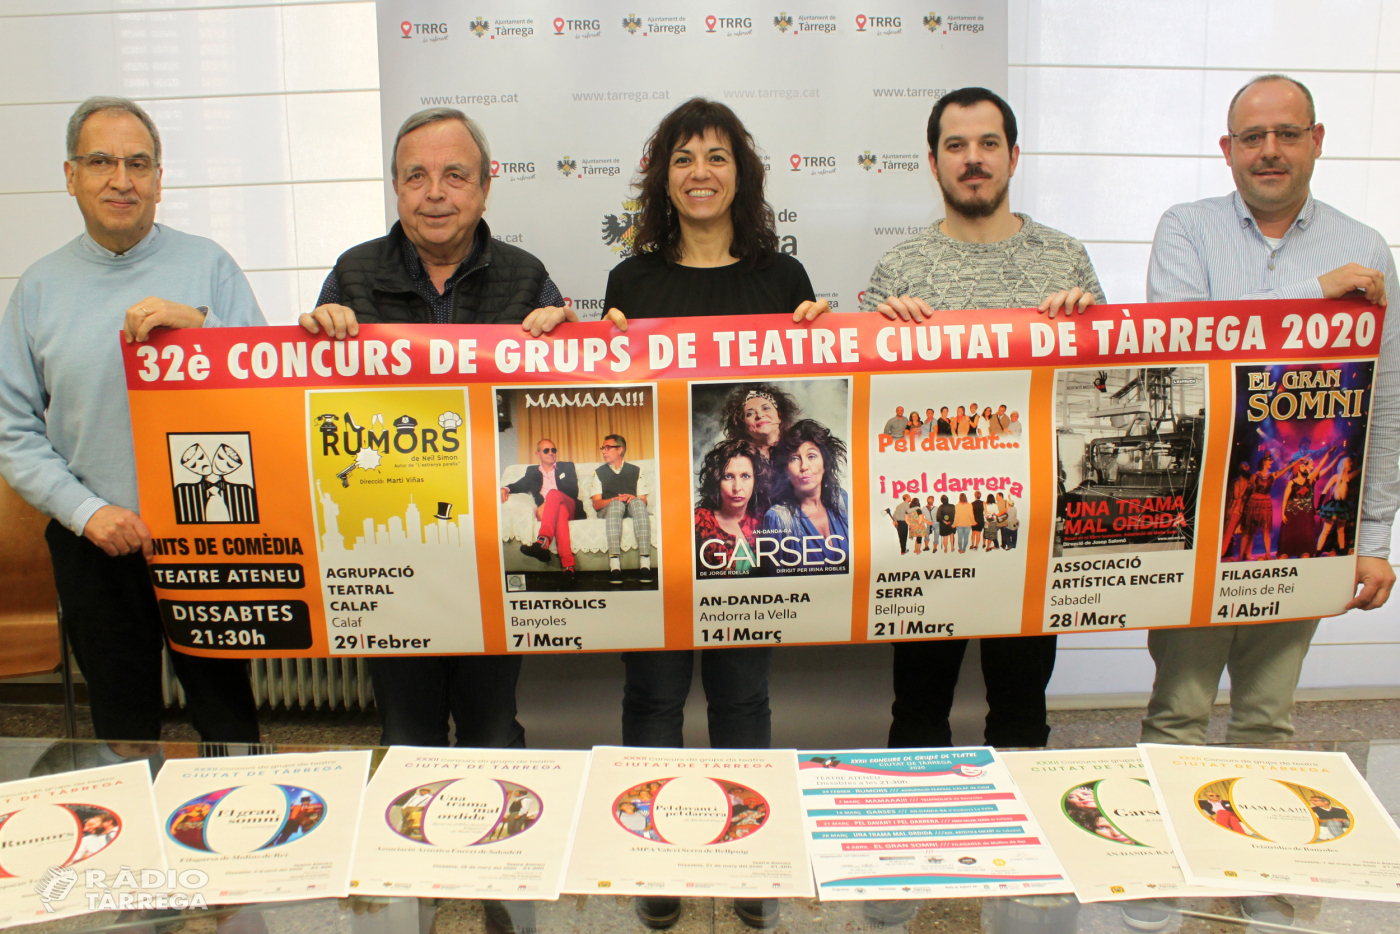 El gènere de la comèdia regna al 32è Concurs de Grups de Teatre Ciutat de Tàrrega, del 29 de febrer al 4 d’abril